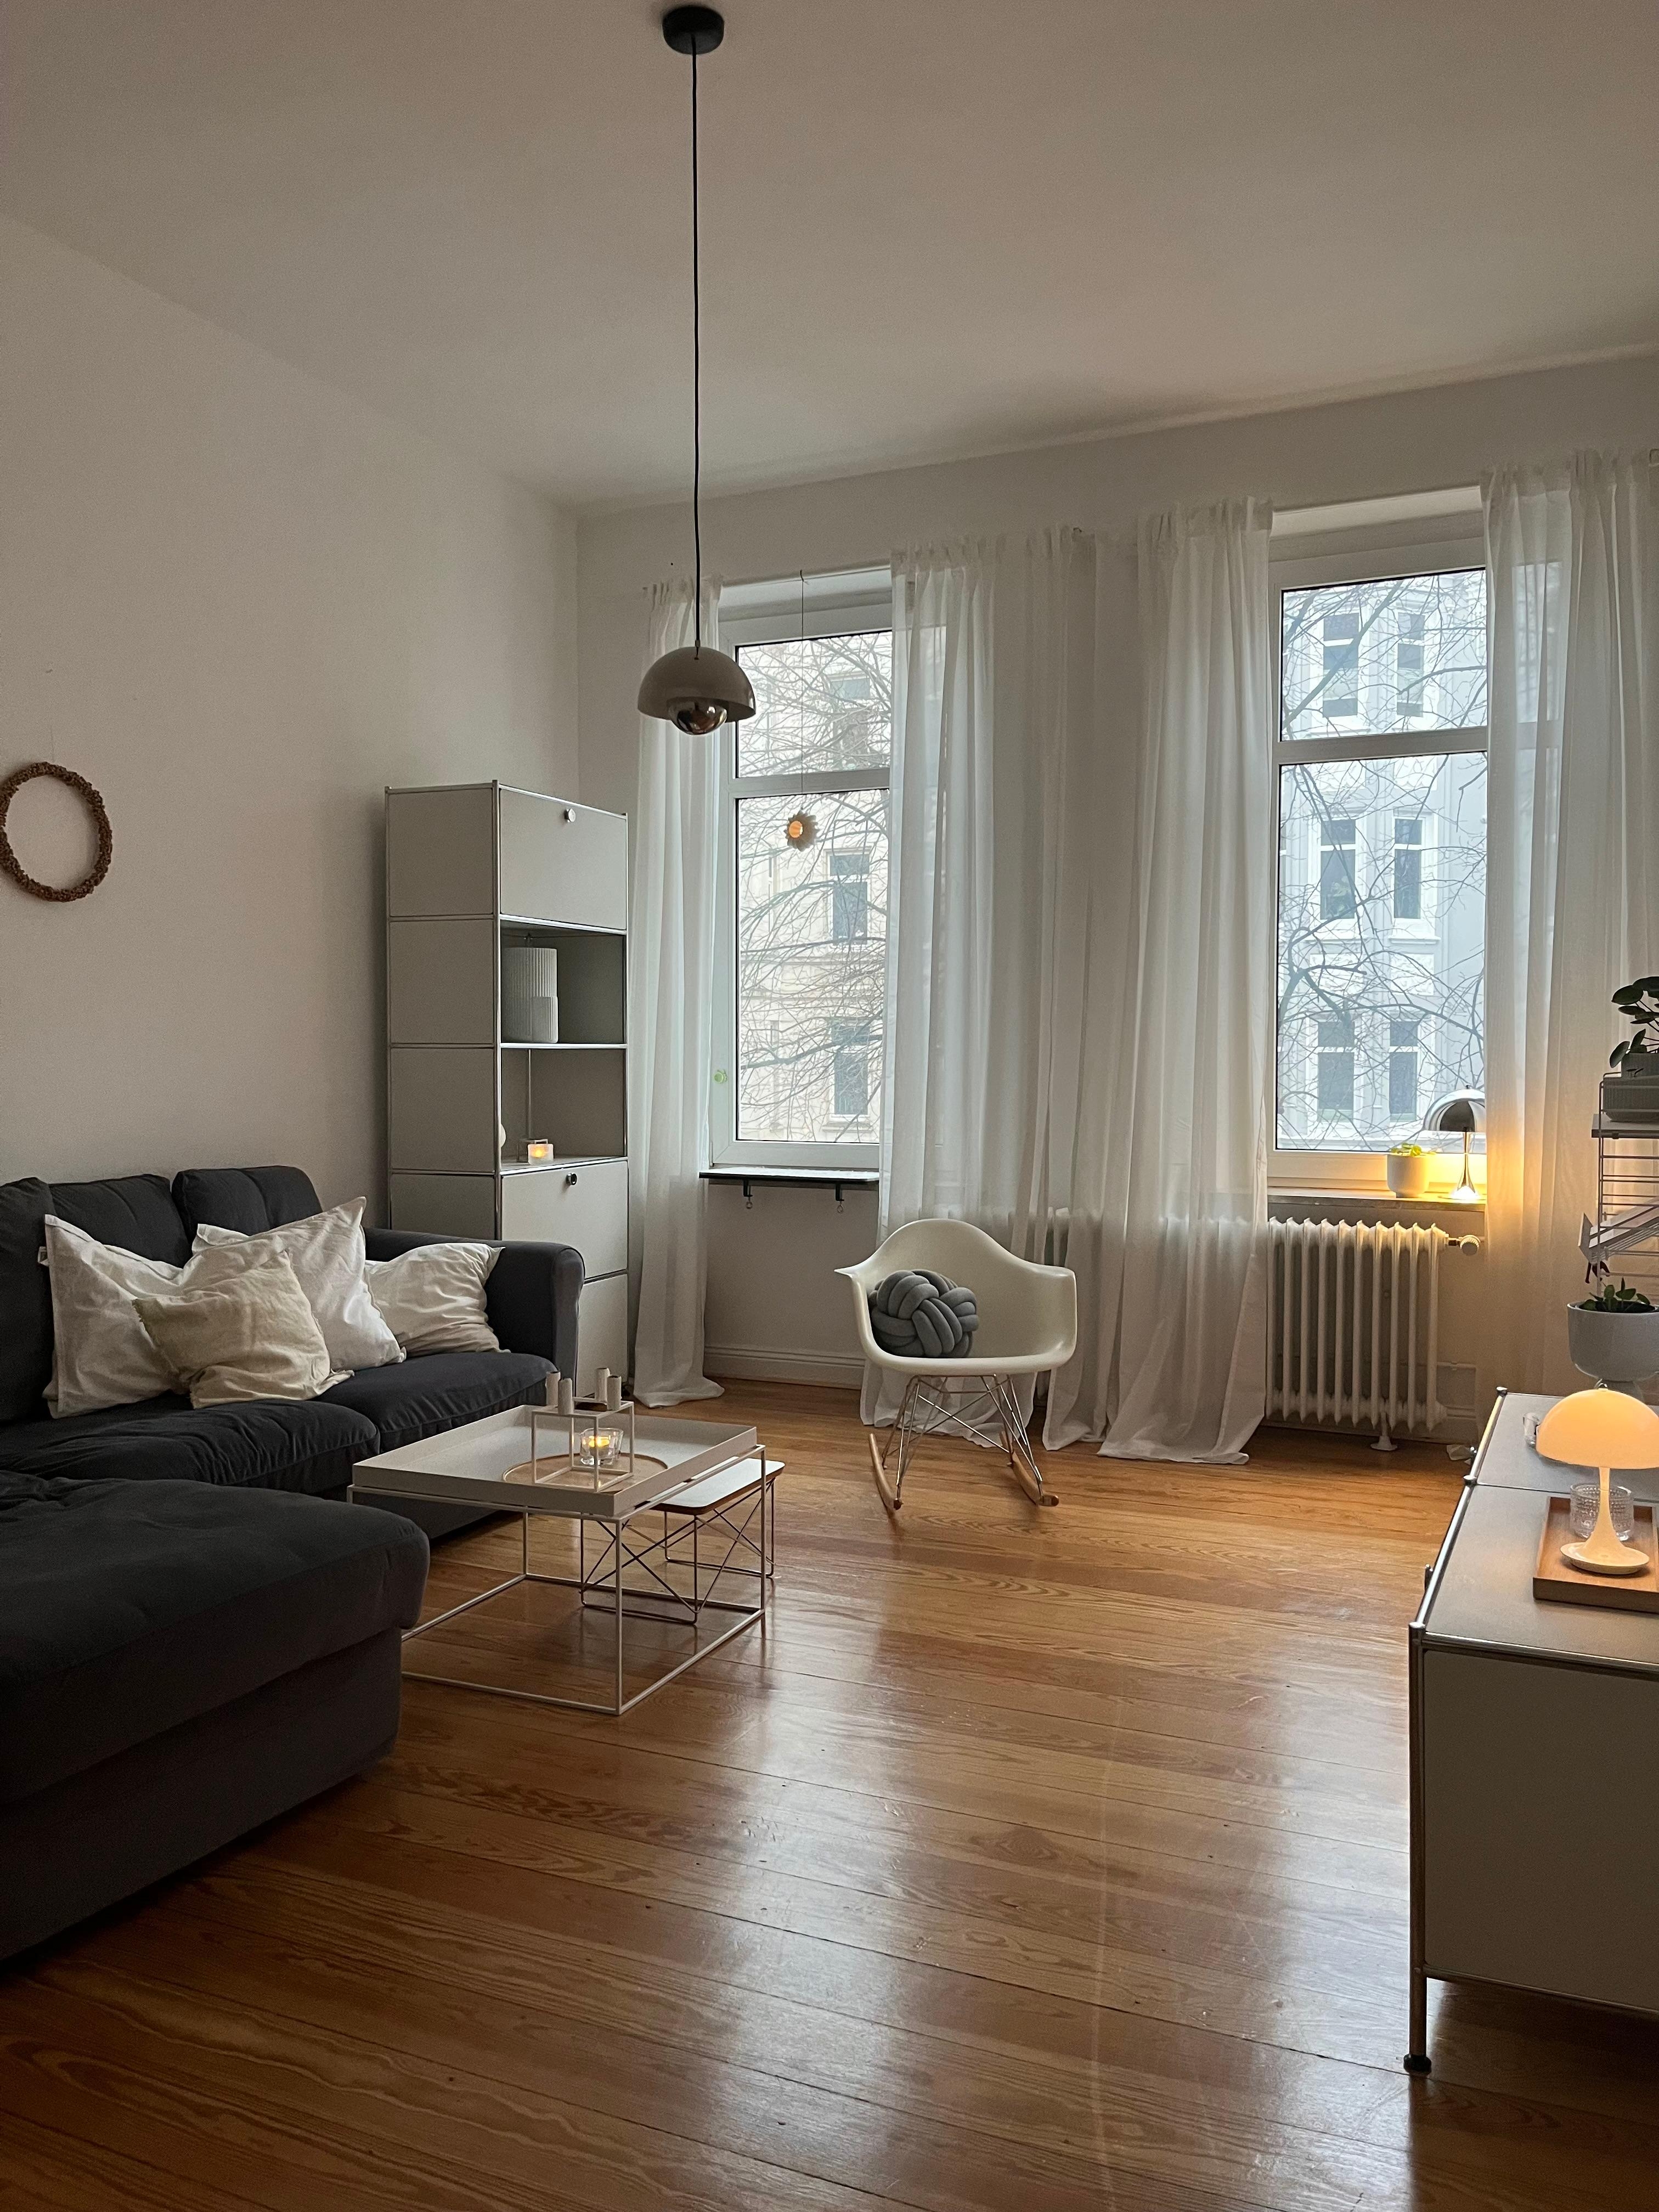 #wohnzimmer #altbauliebe #skandinavischwohnen #leuchtenliebe #louispoulsen